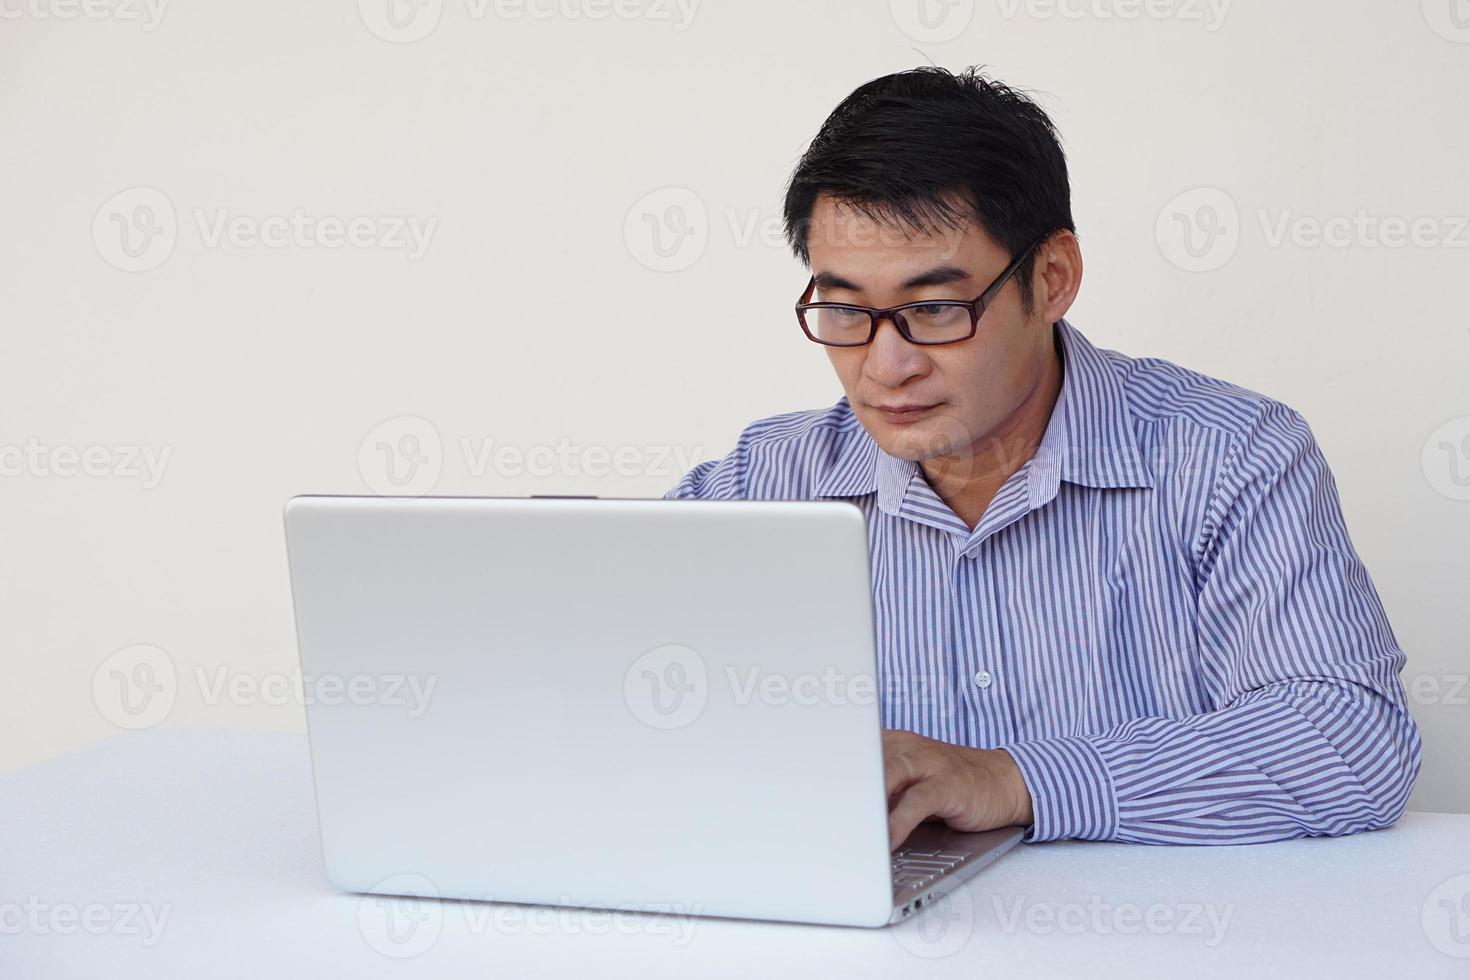 bonito homem asiático está trabalhando no computador portátil. surfando na internet. conceito. trabalho online, trabalhando com dados. tecnologia no dia a dia foto